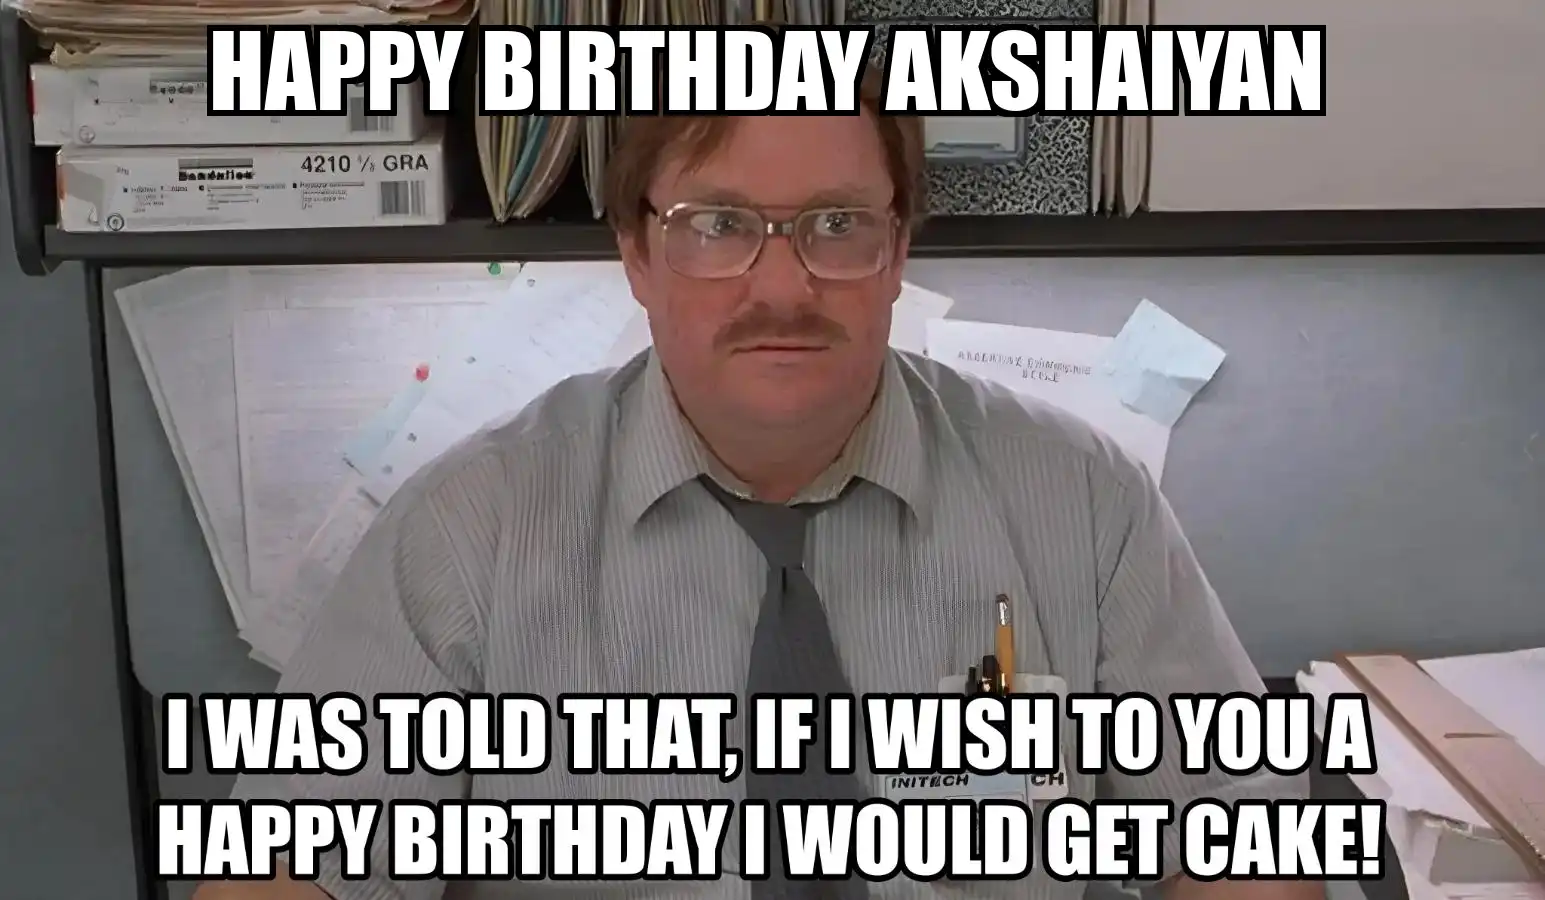 Happy Birthday Akshaiyan I Would Get A Cake Meme